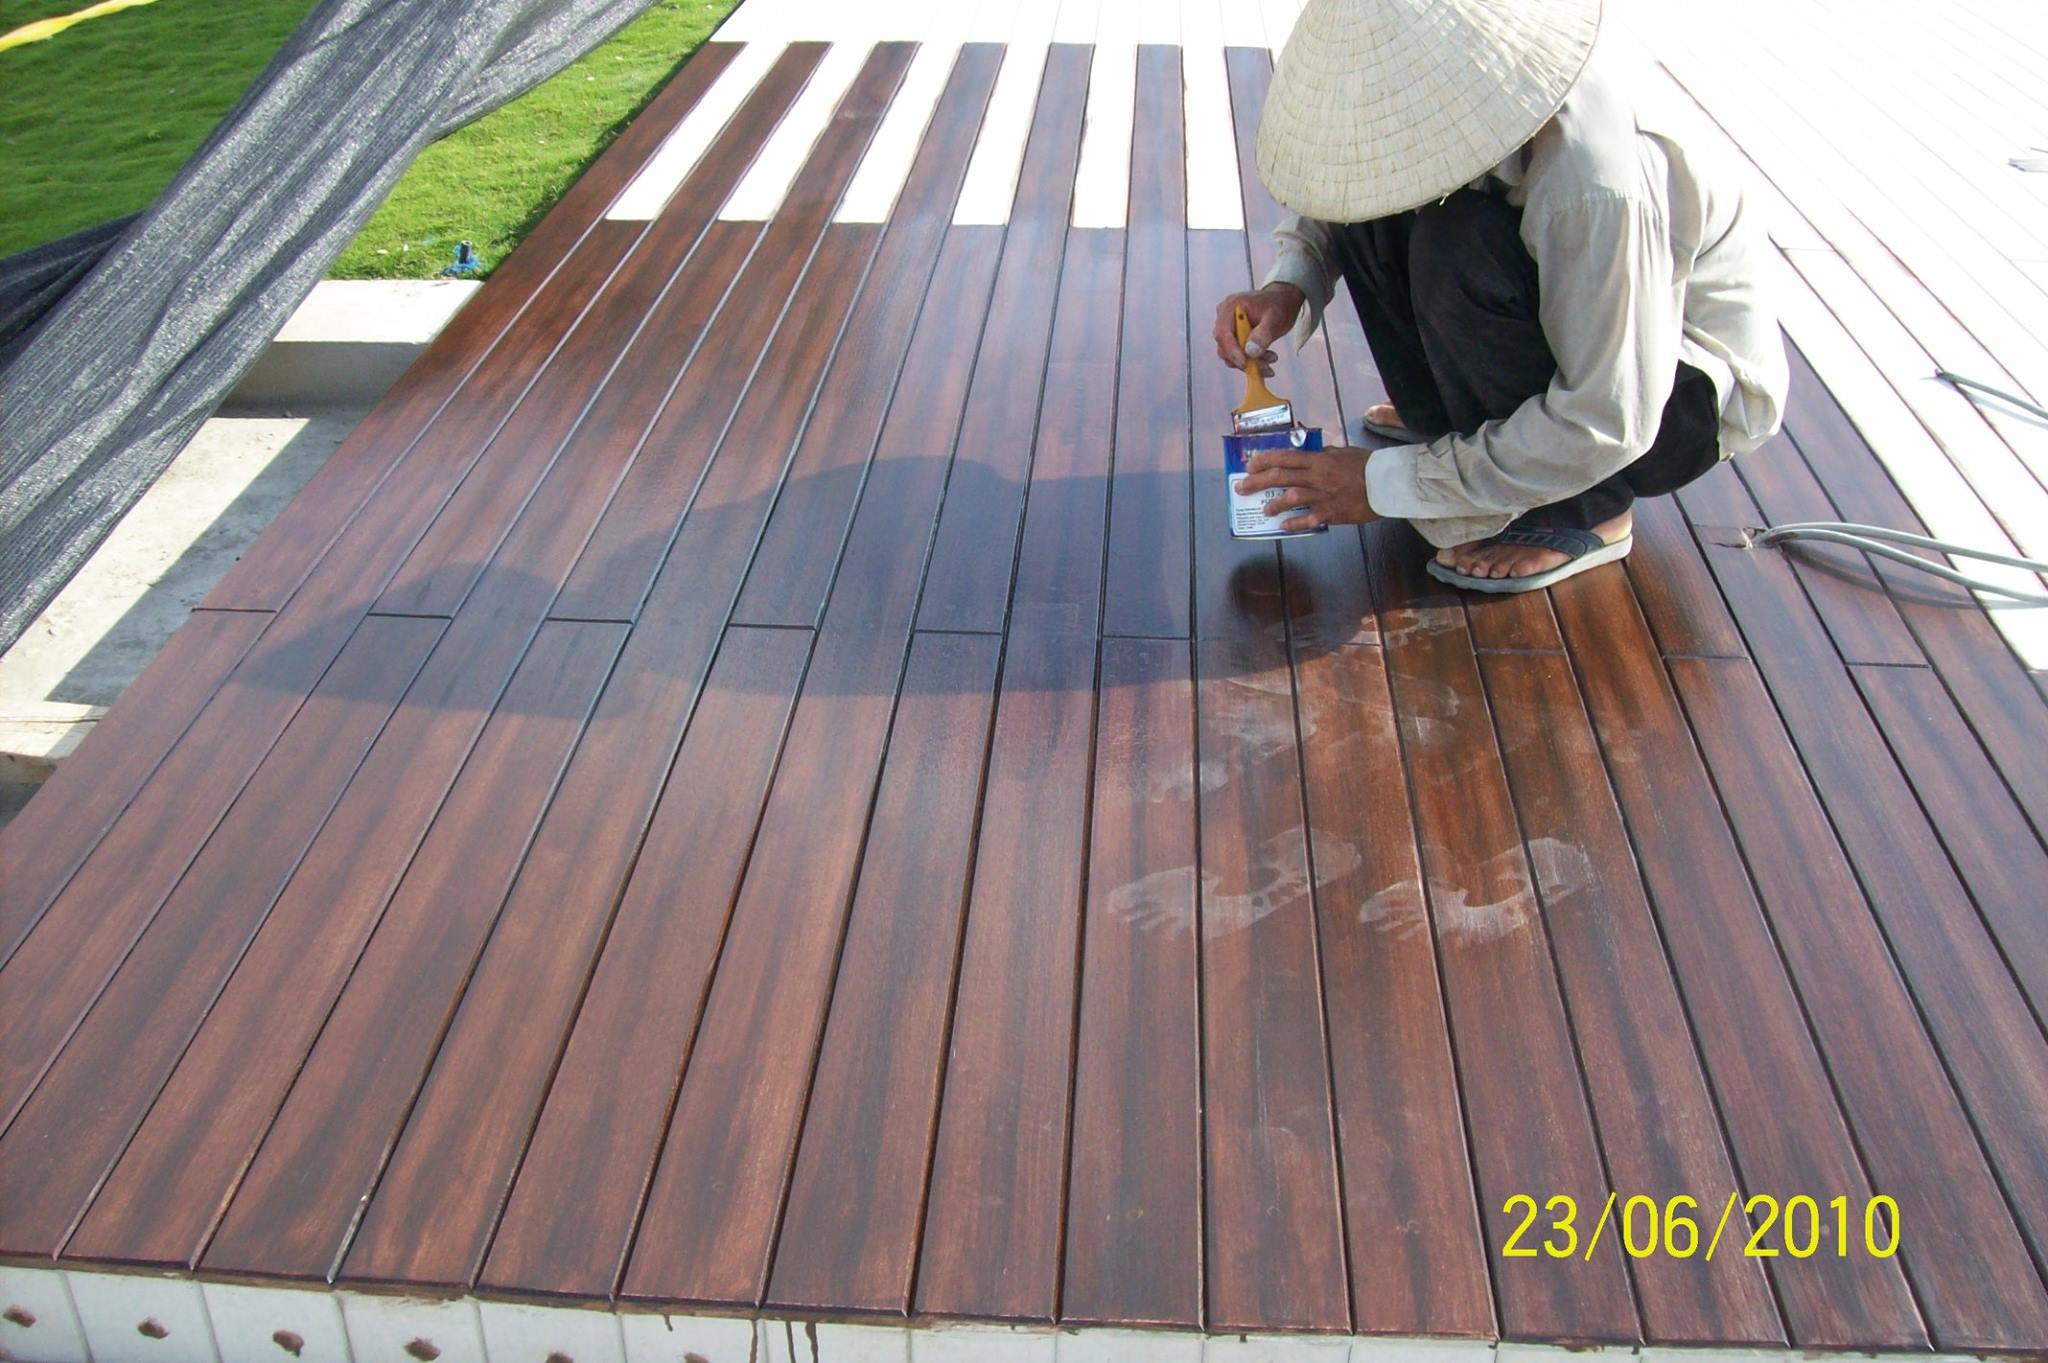 Sàn gỗ conwood chất lượng cao GIÁ SIÊU RẺ, LH: 02466604646